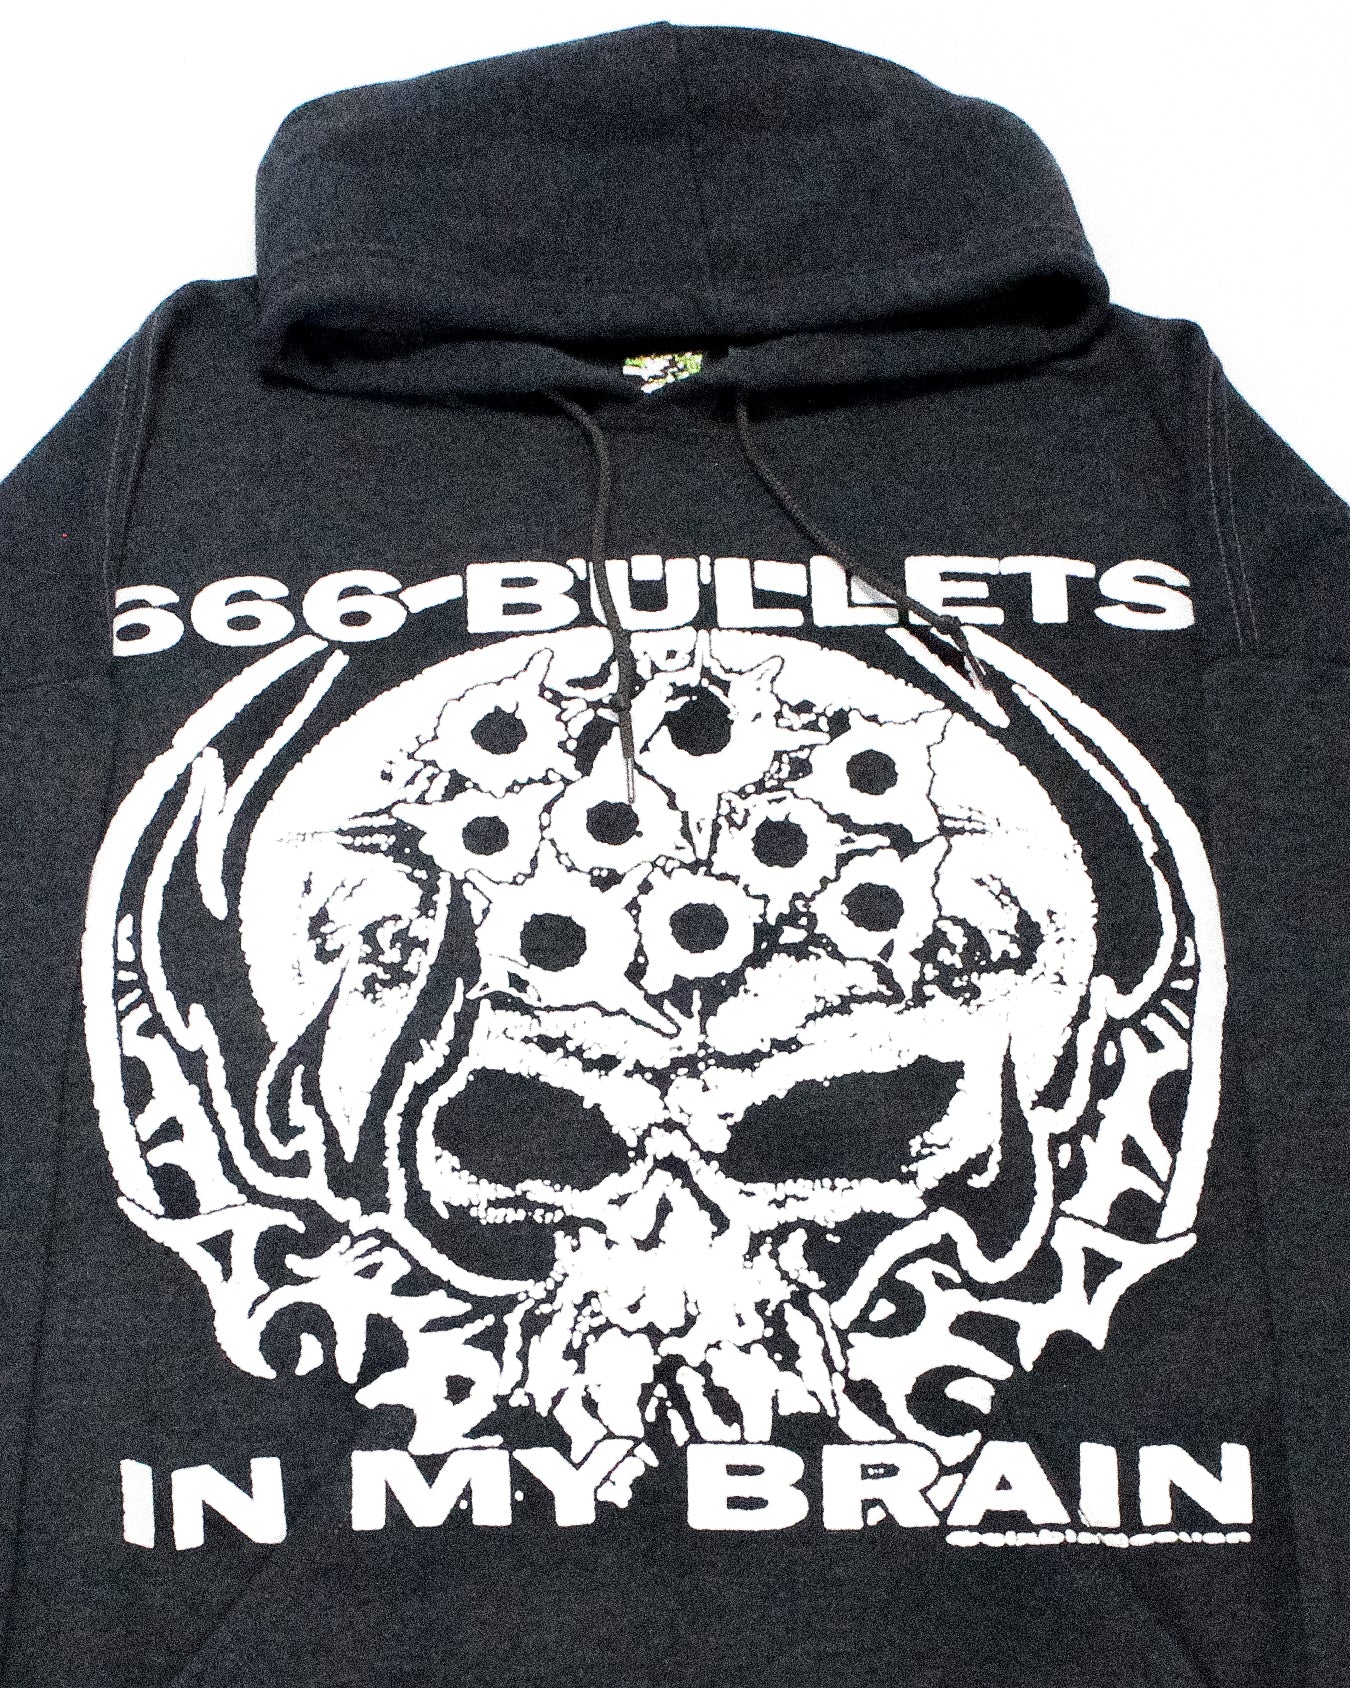 "666 BULLETS IN MY BRAIN" Heavyweight Hood (XXL)